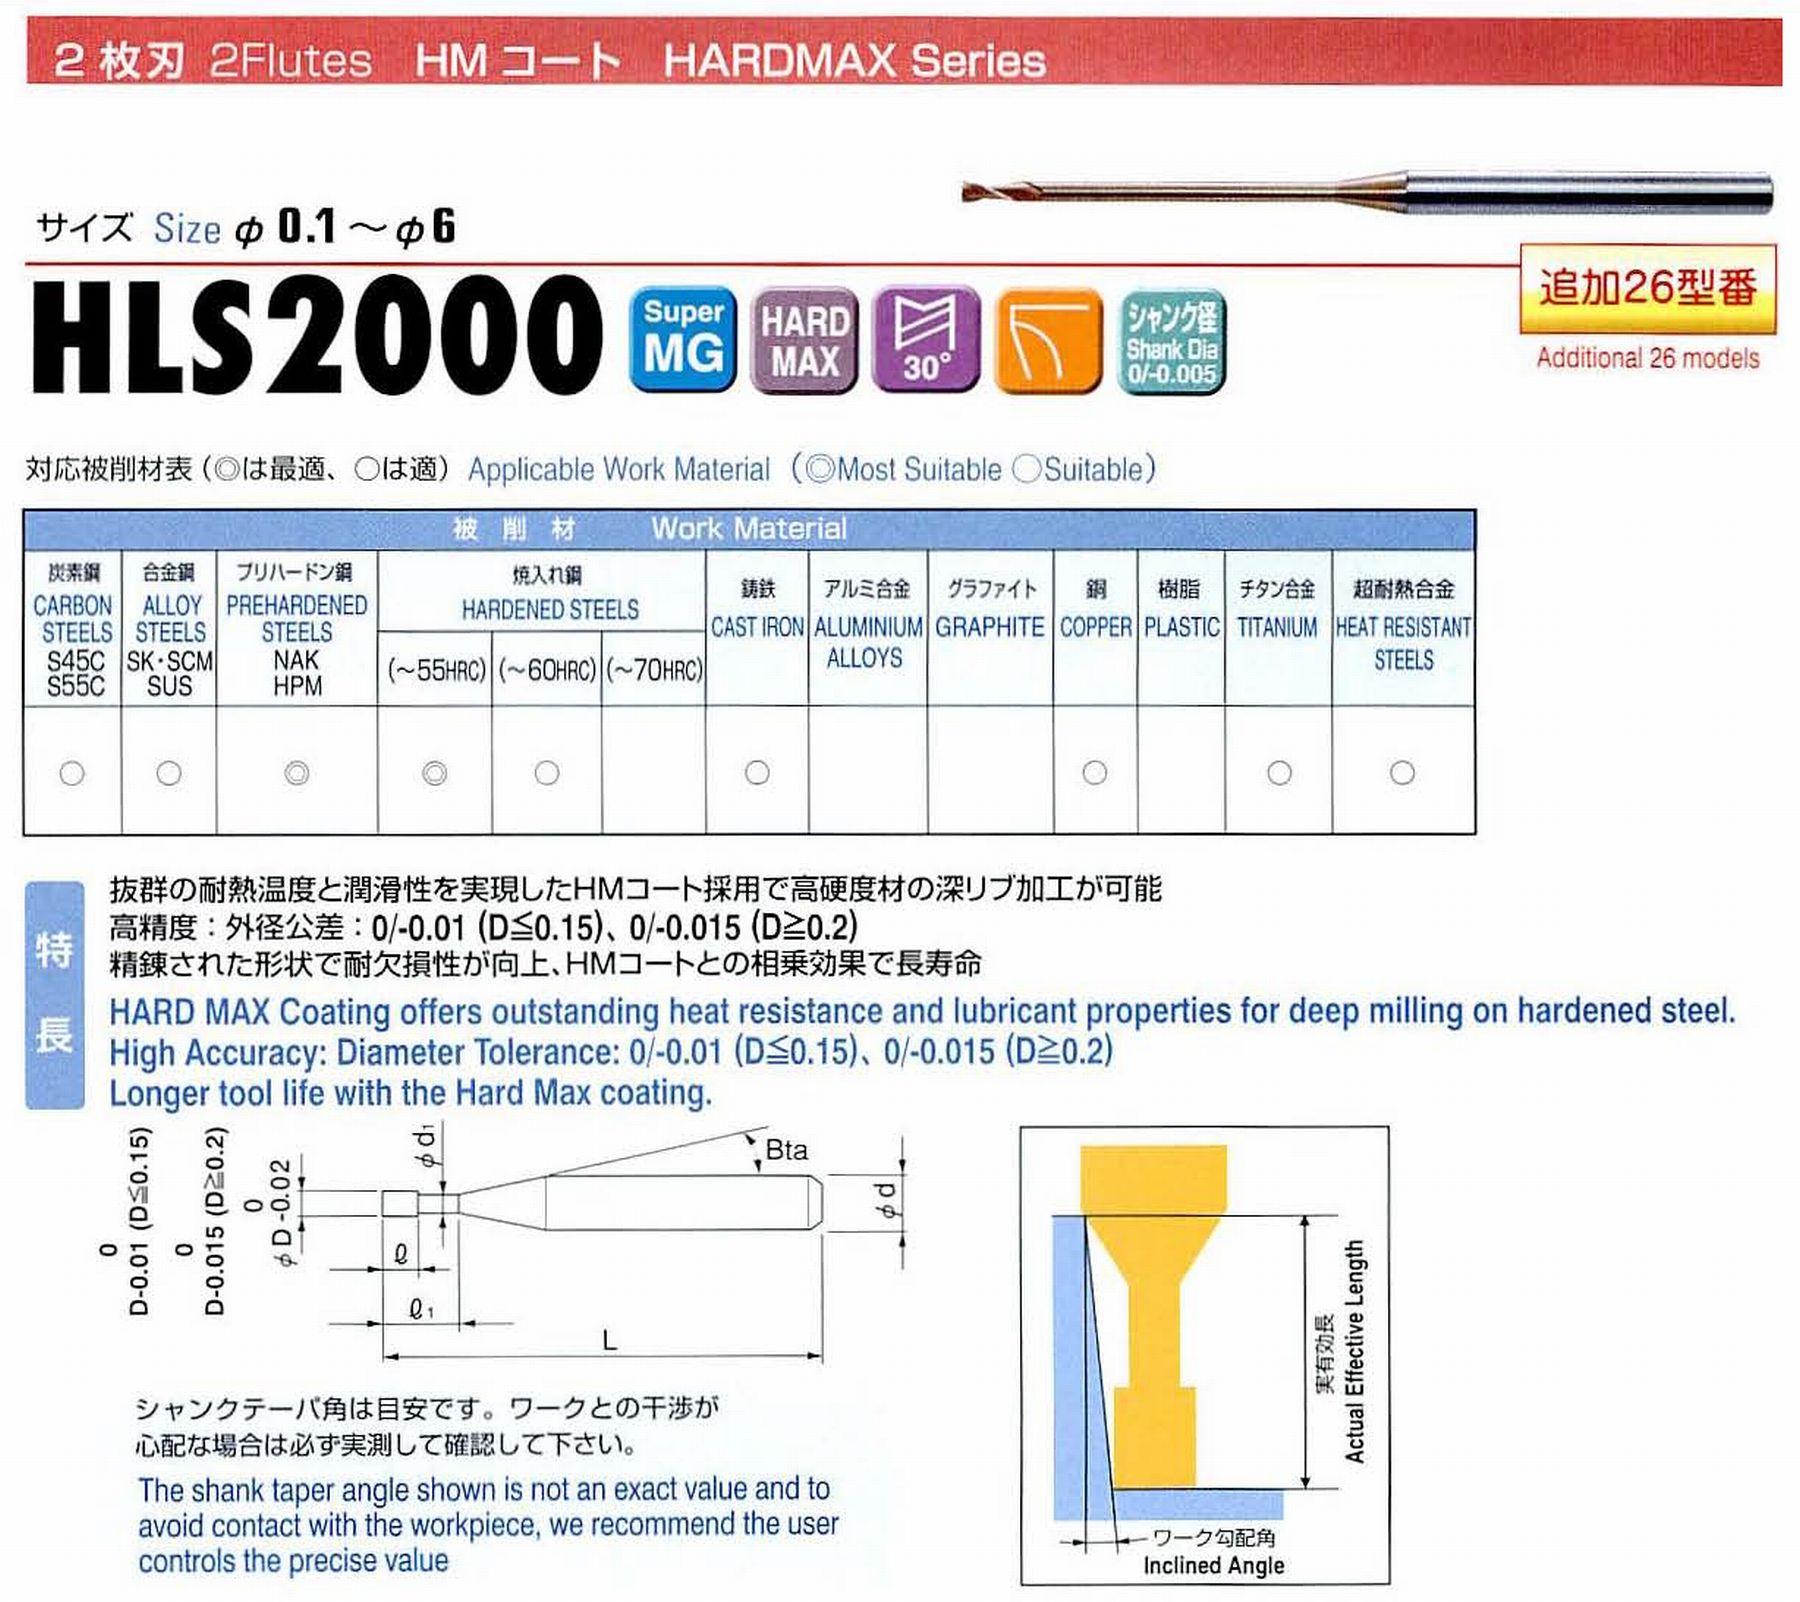 ユニオンツール 2枚刃 HLS2001-003 外径0.1 有効長0.3 刃長0.1 首径0.088 シャンクテーパ角11° 全長45 シャンク径4